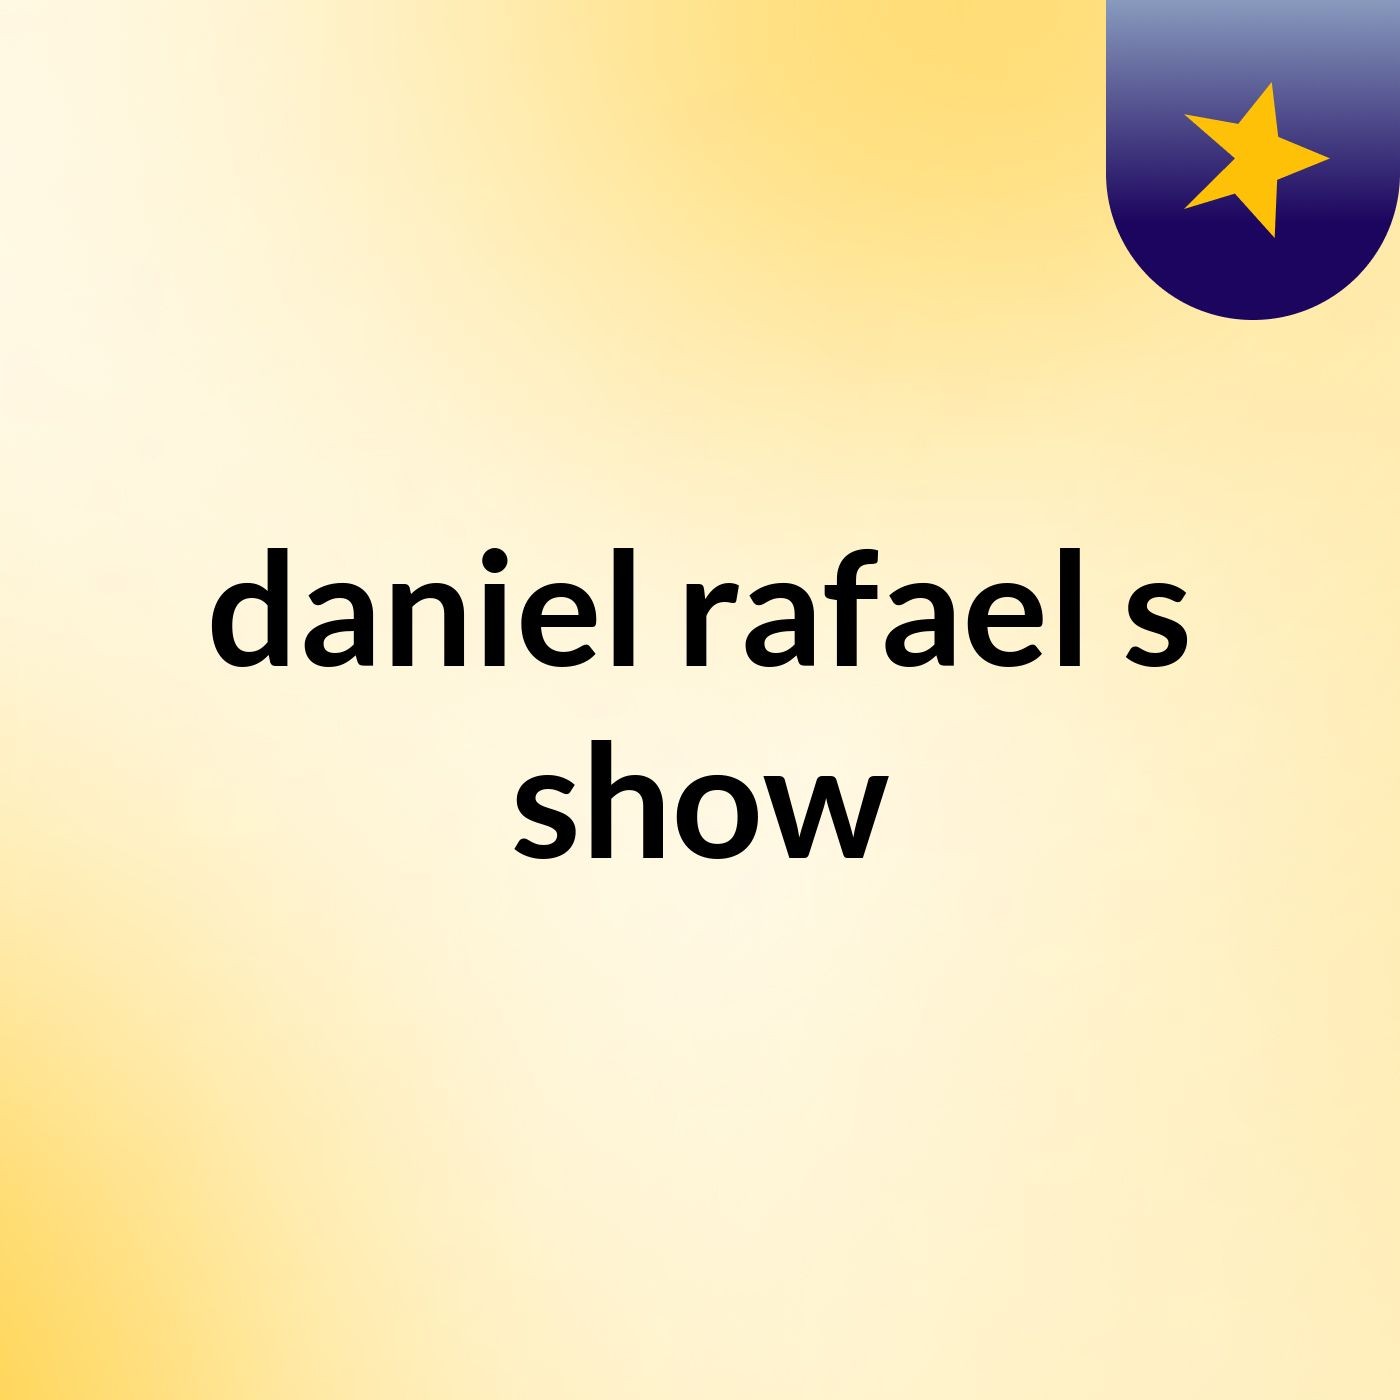 daniel rafael's show